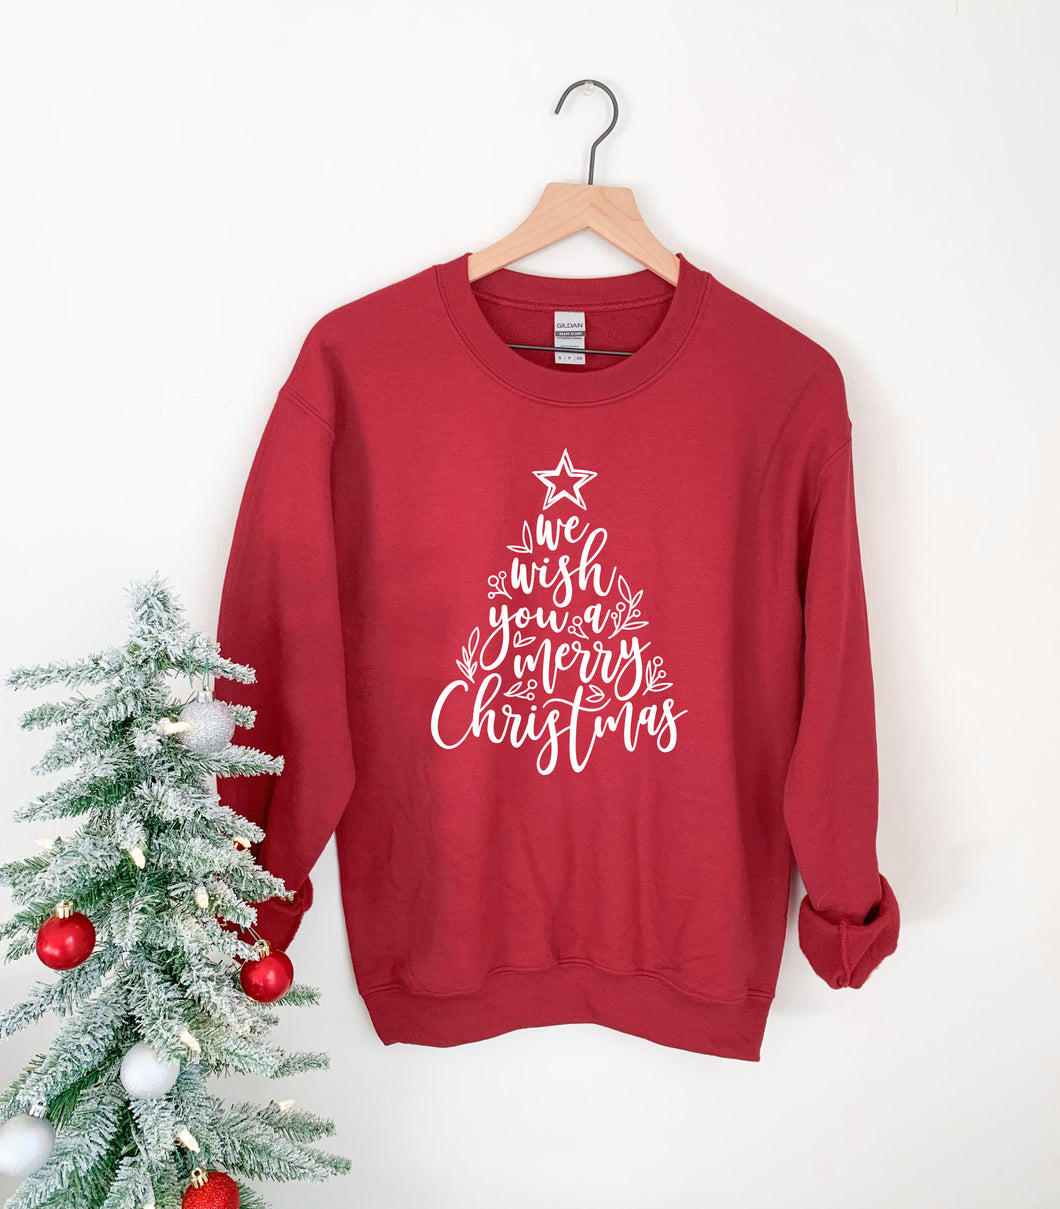 We Wish You A Merry Christmas Sweatshirt